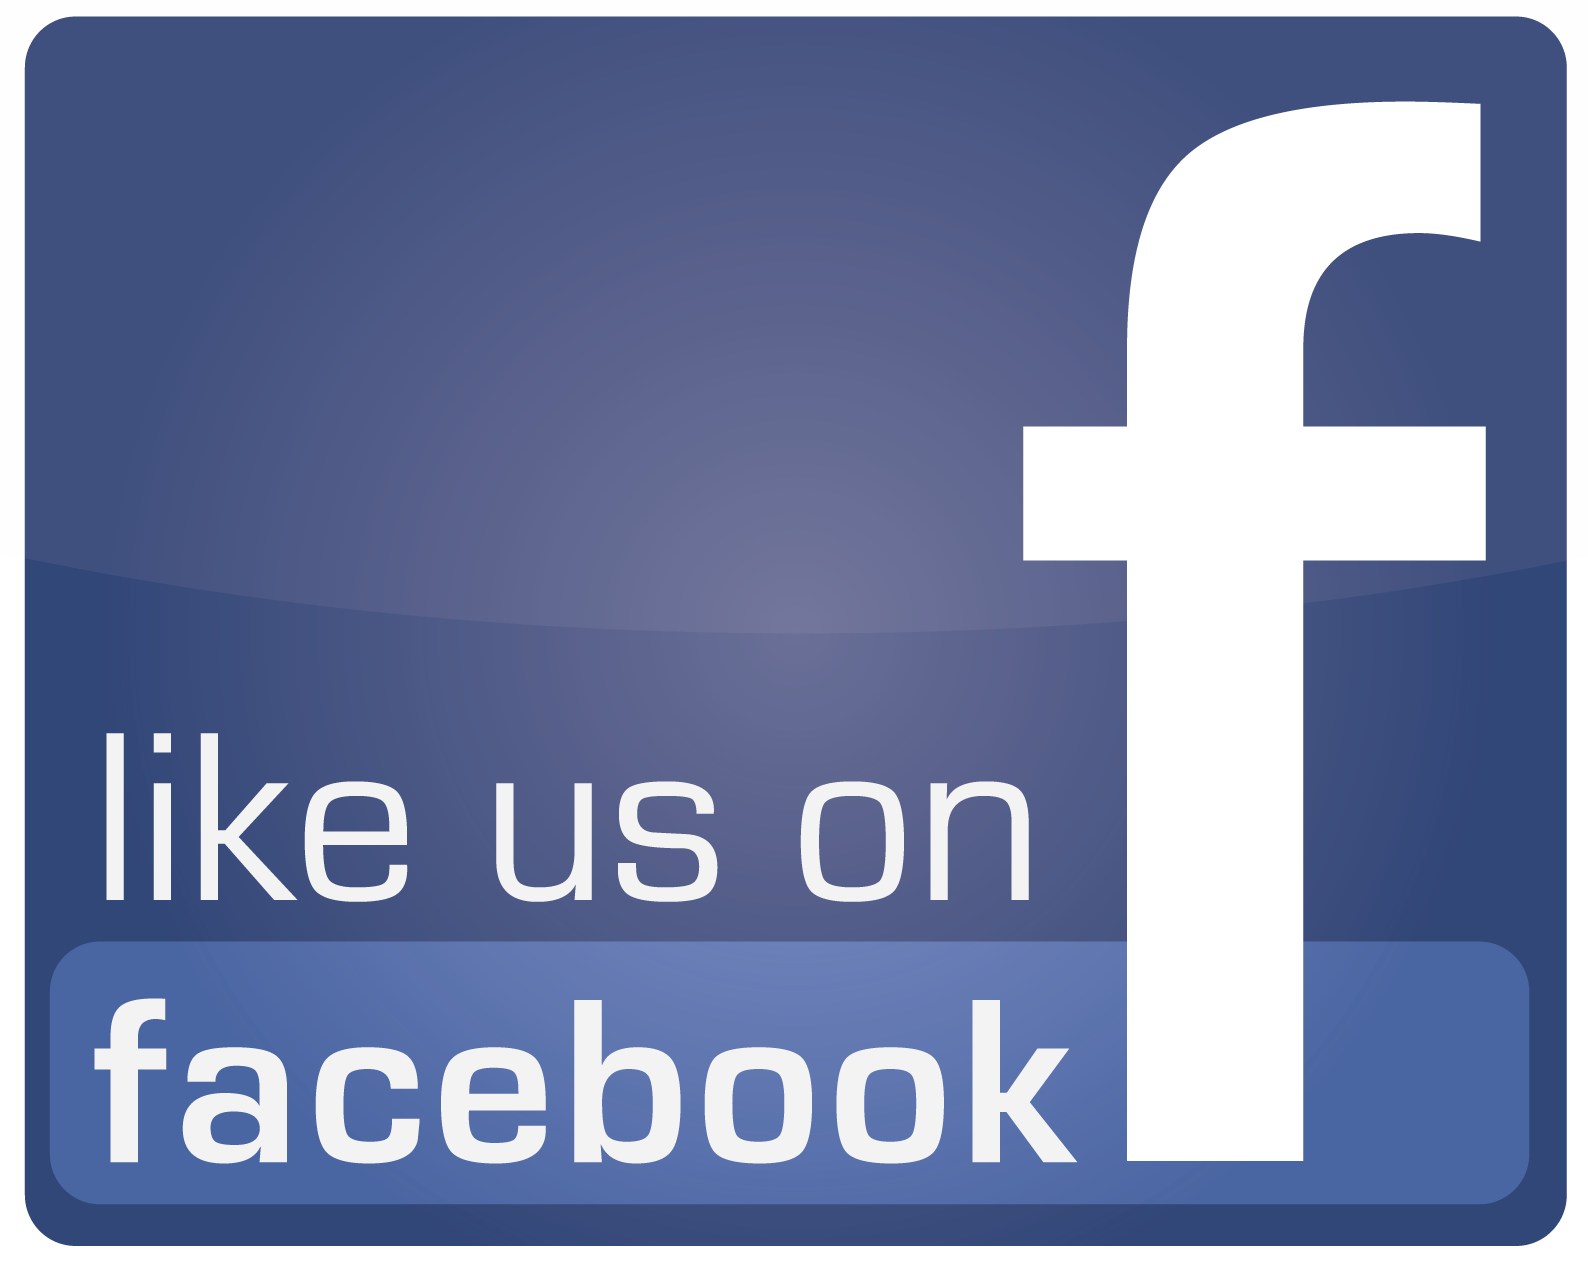 Find us on facebook!